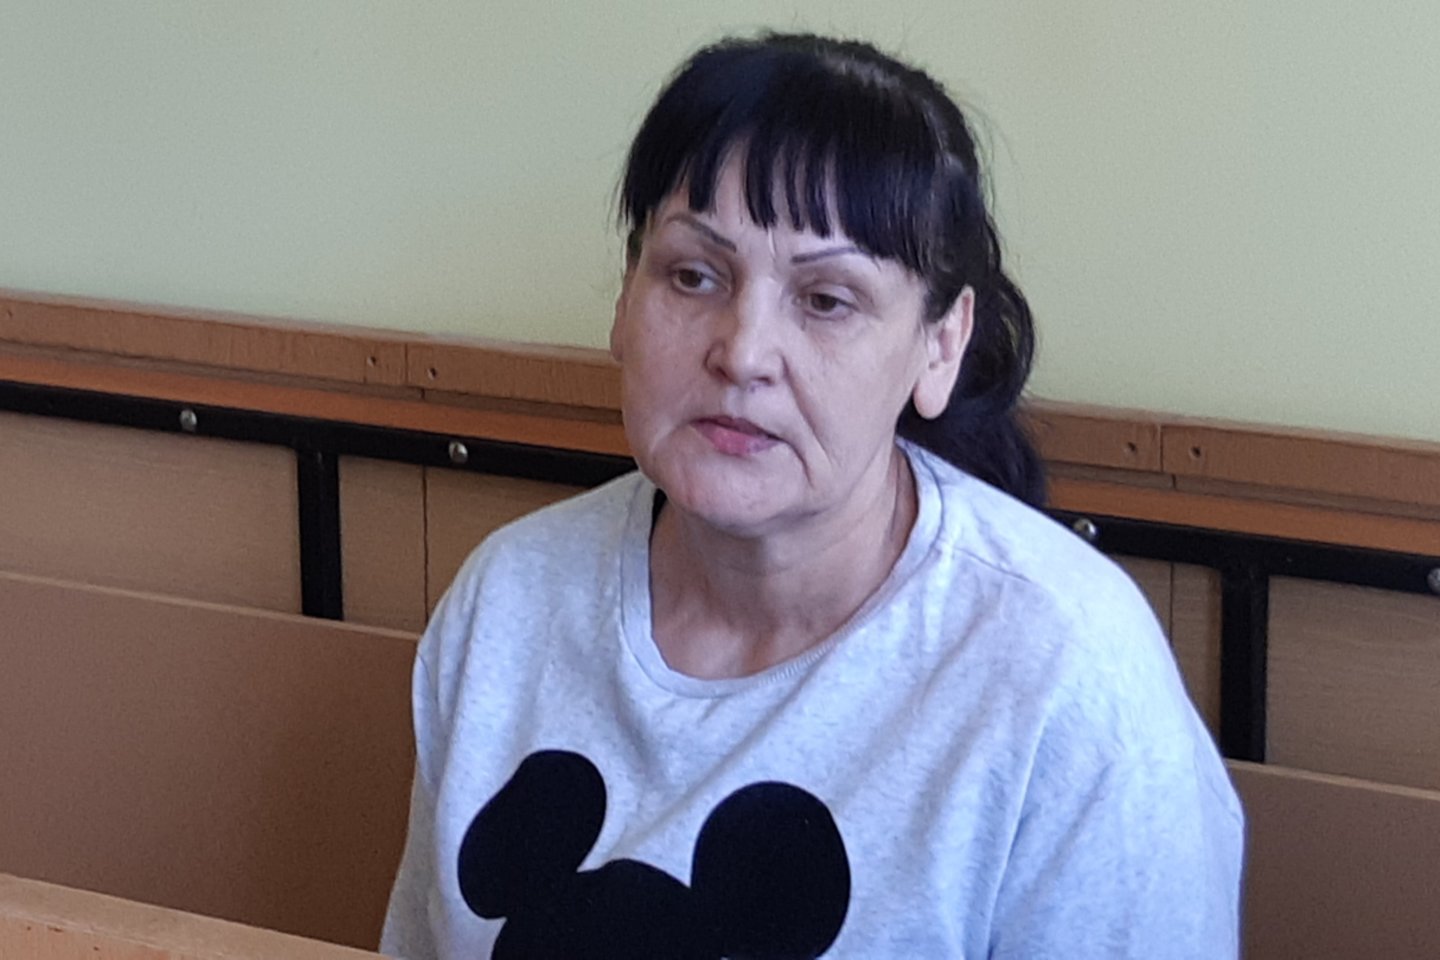 Klaipėdos rajono gyventoja Rūta Vaitkienė kaltinama namuose tyčia nužudžiusi savo sugyventinį.<br> A.Pilaitienės nuotr.